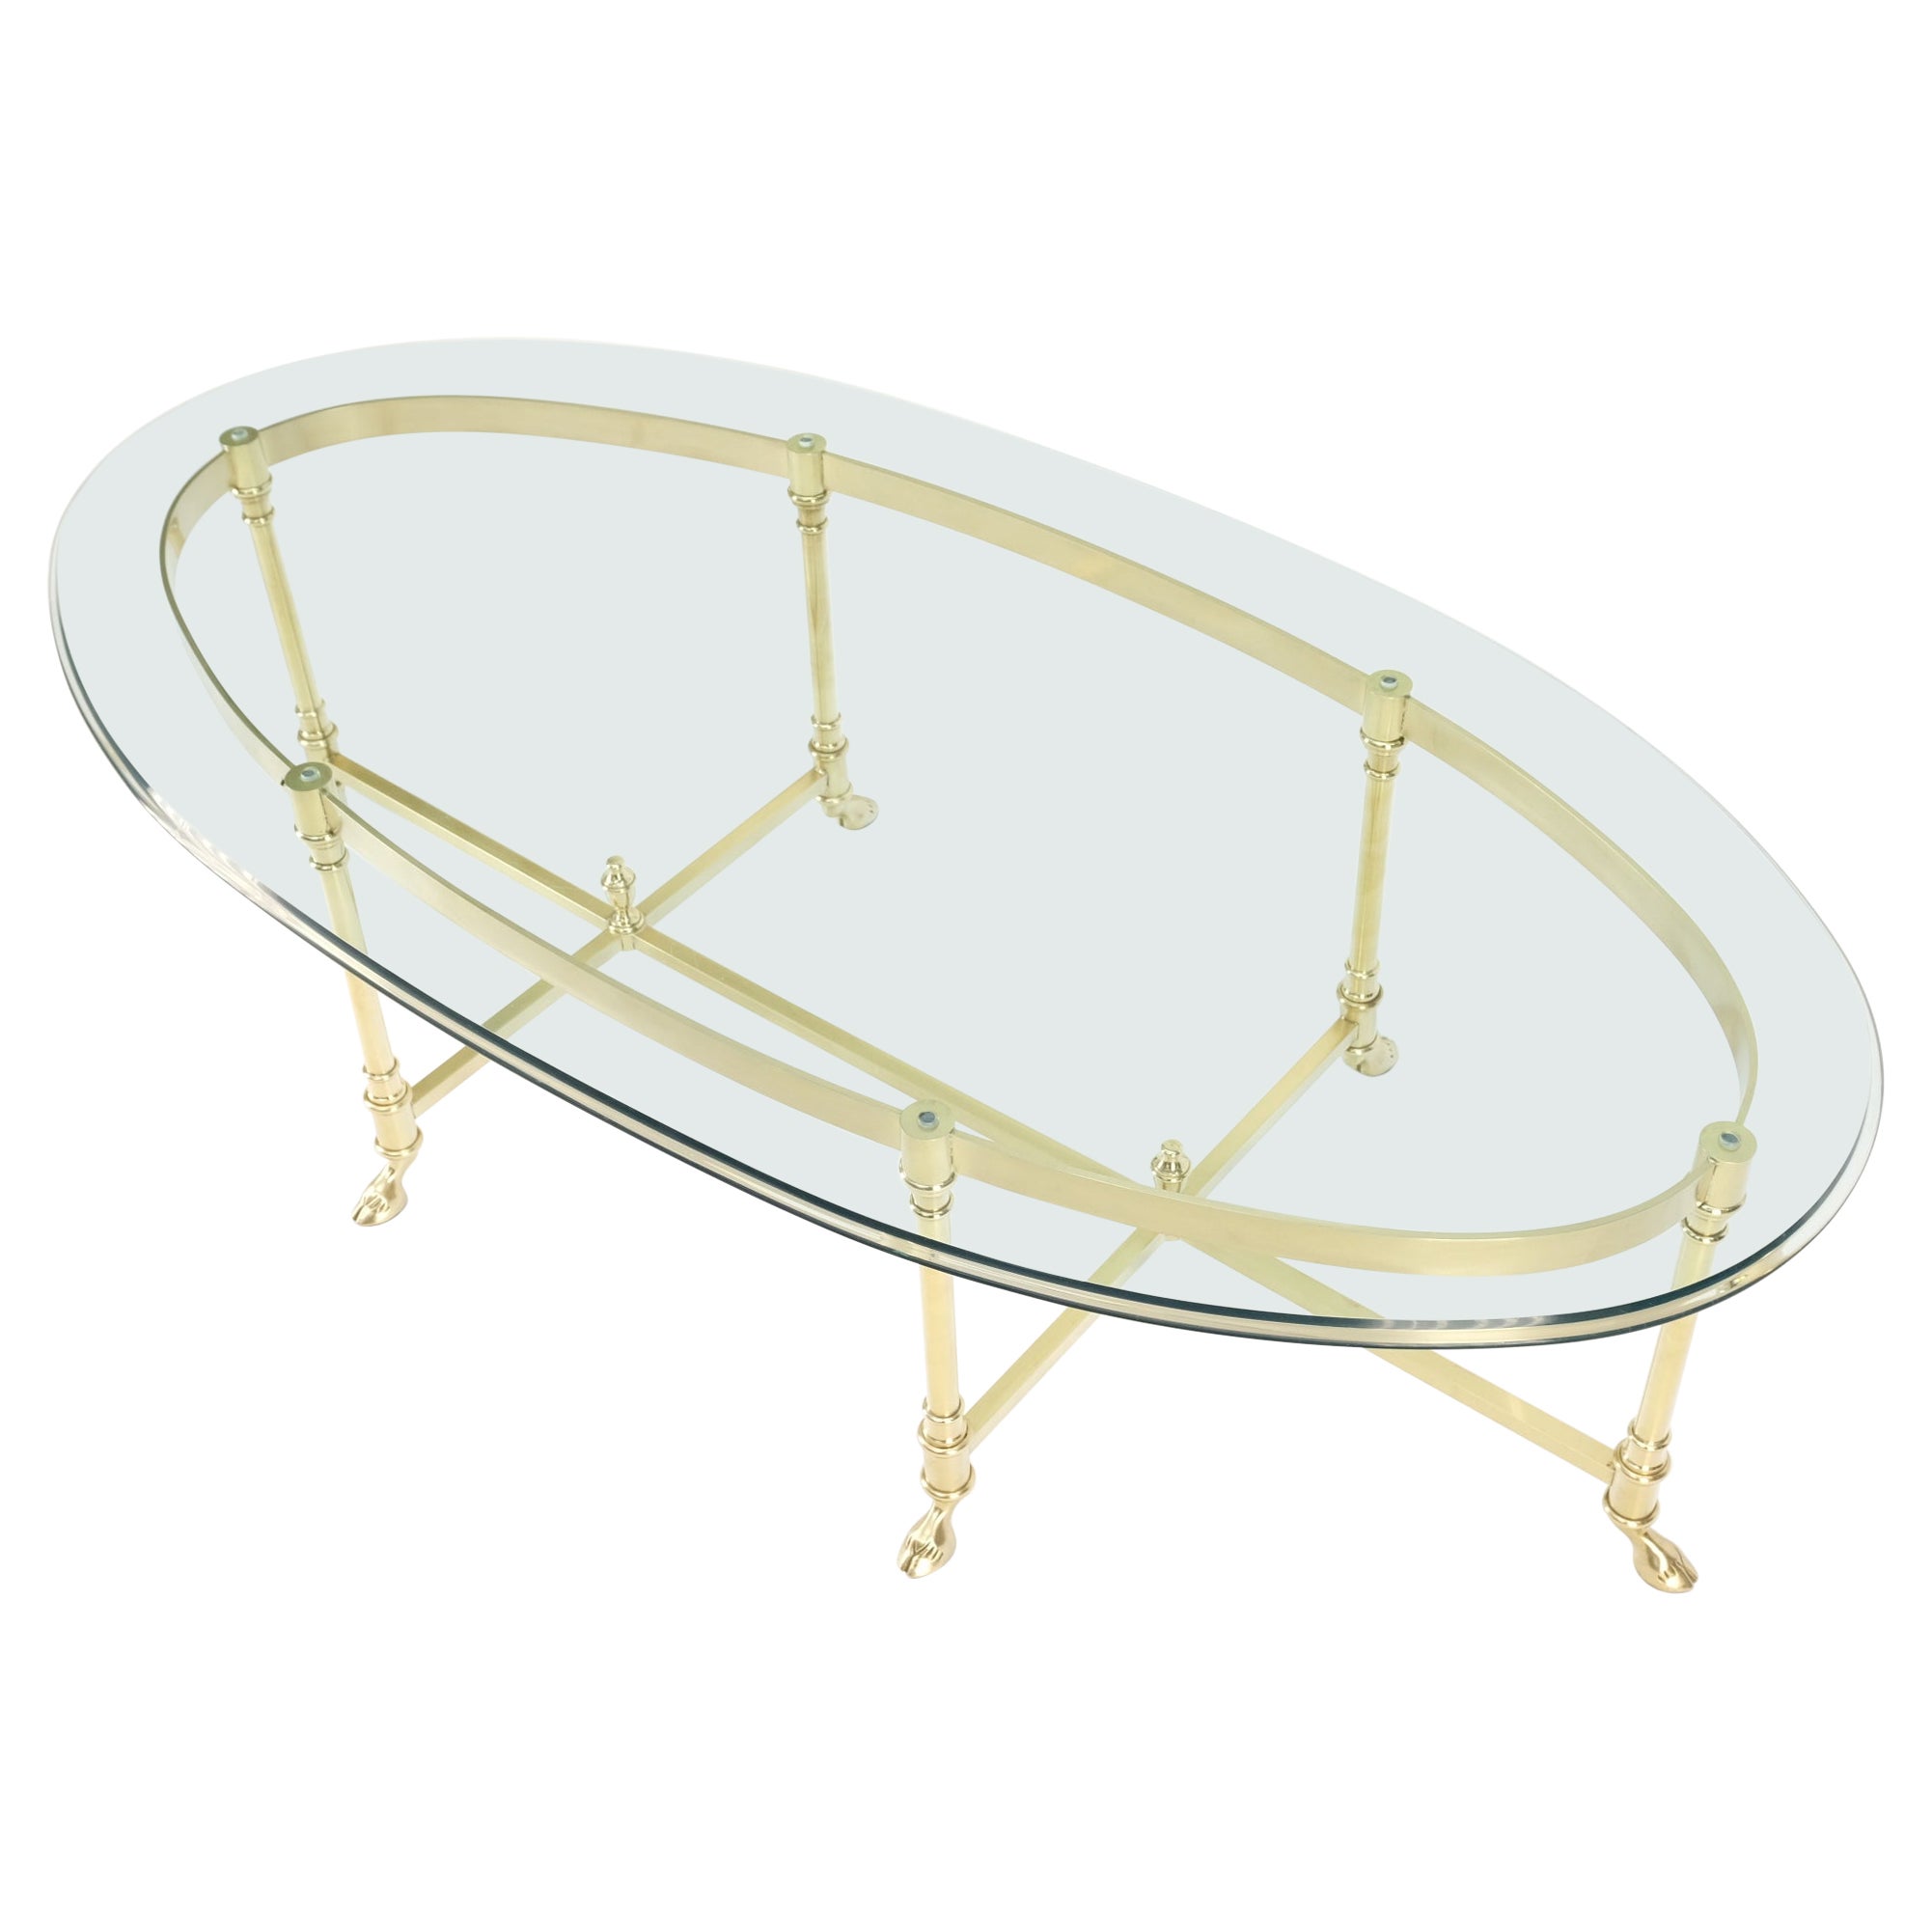 Grande table basse italienne ovale en laiton massif avec pieds en forme de sabot et plateau en verre